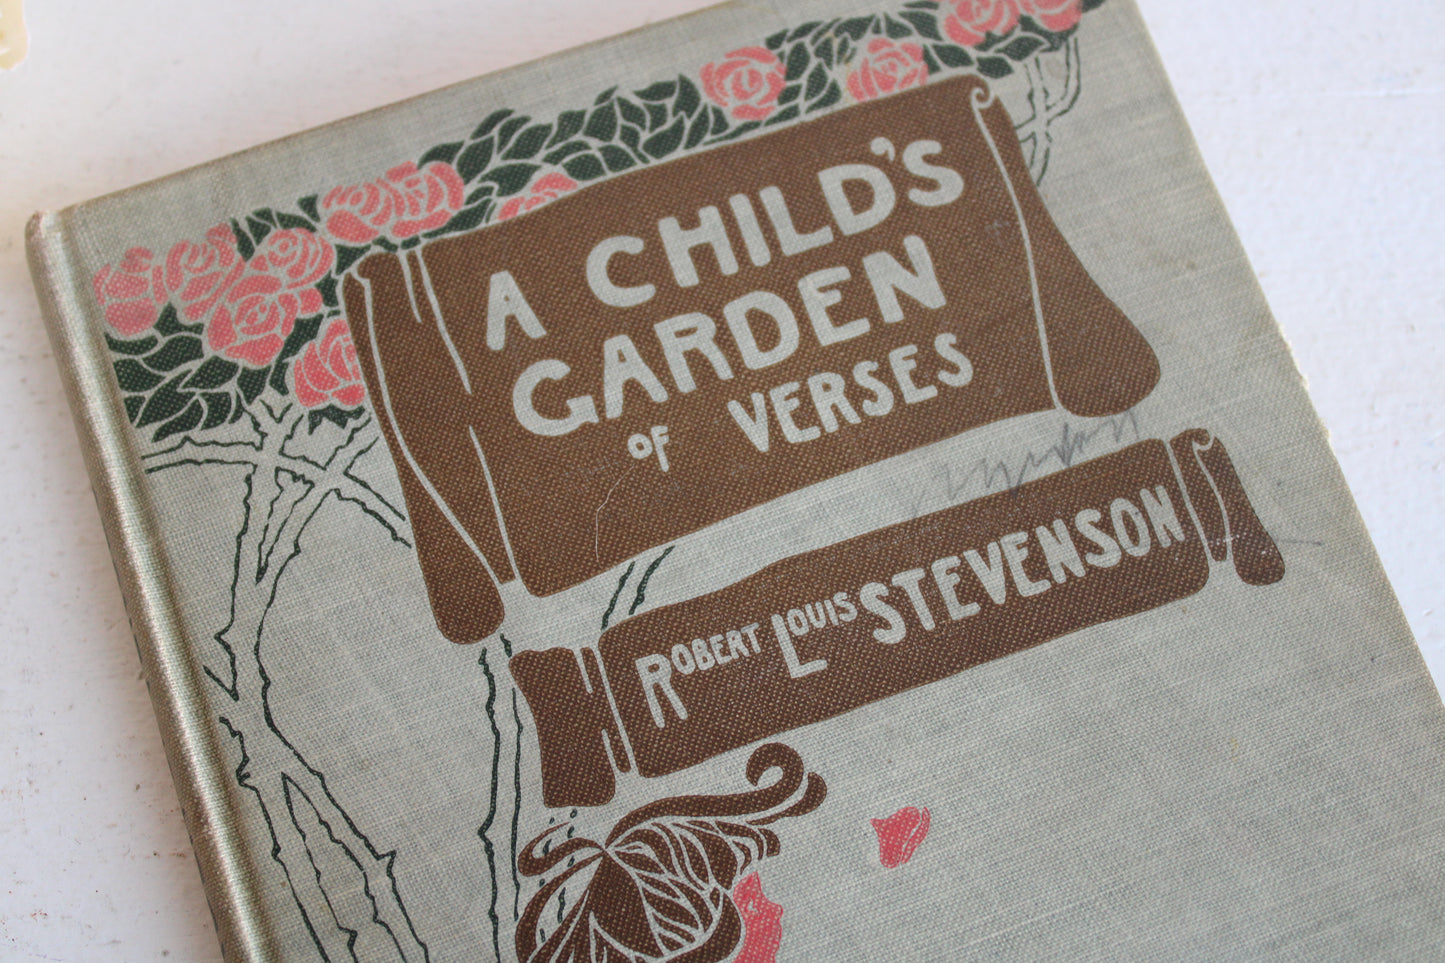 Antique Book, "A Child's Garden of Verse" by Robert Louis Stevenson